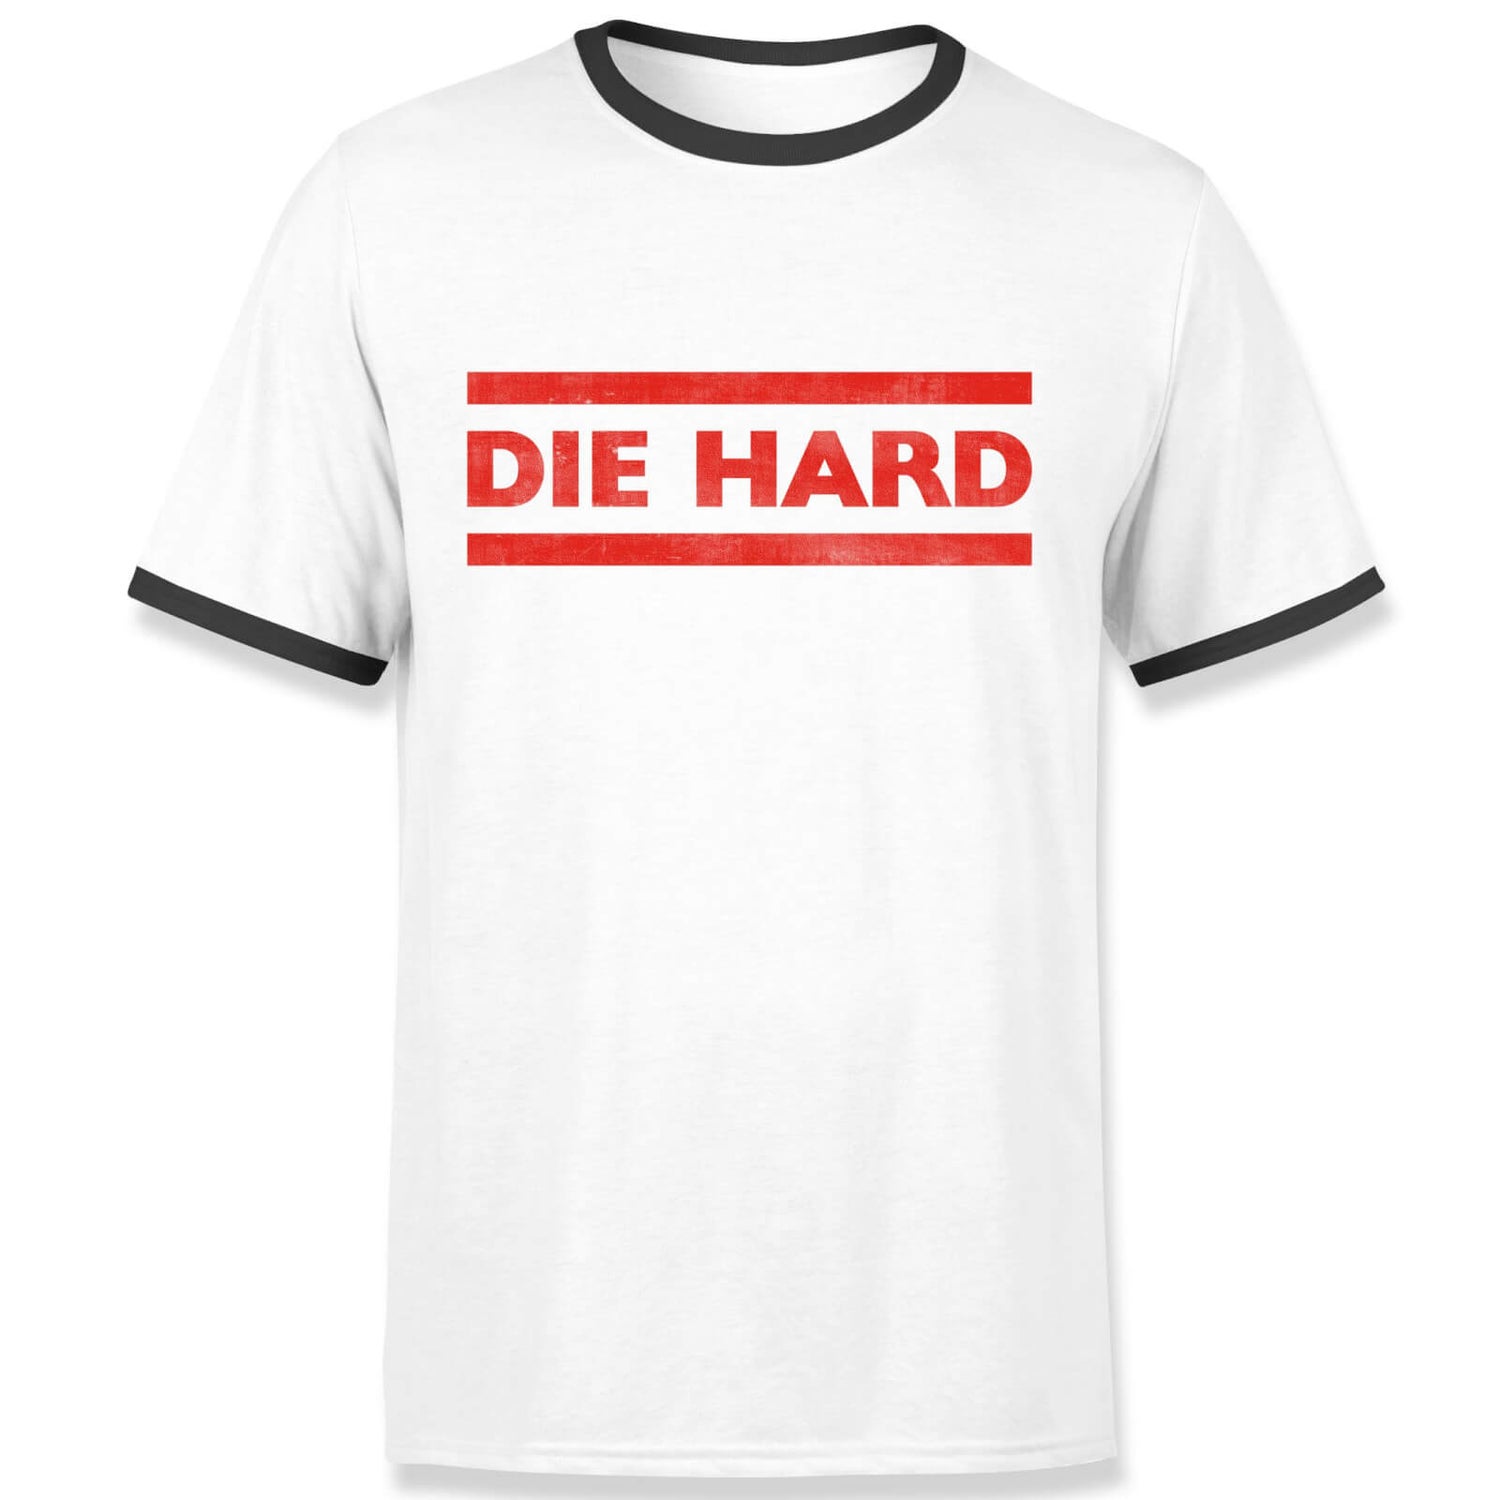 Die Hard Red Logo Men's Ringer T-Shirt - White/Black